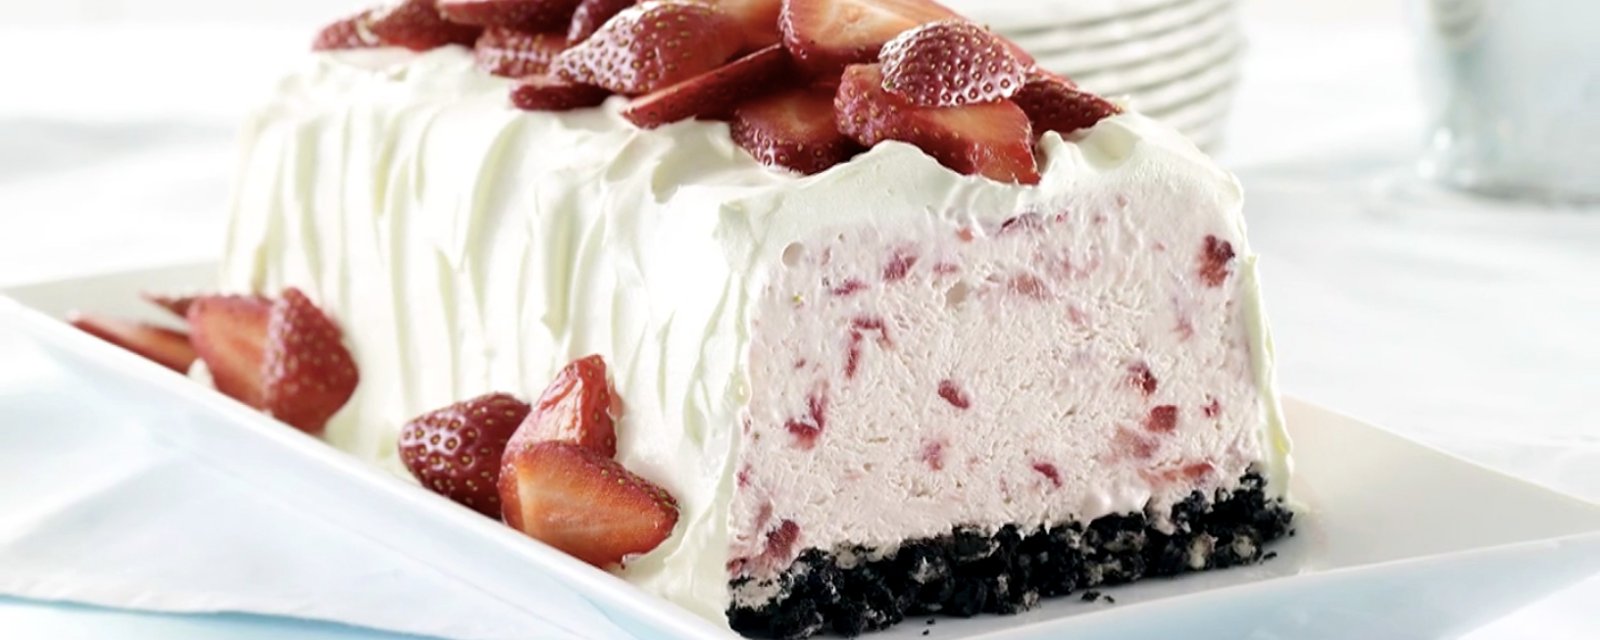 Ce dessert glacé aux fraises est tout simplement wow!